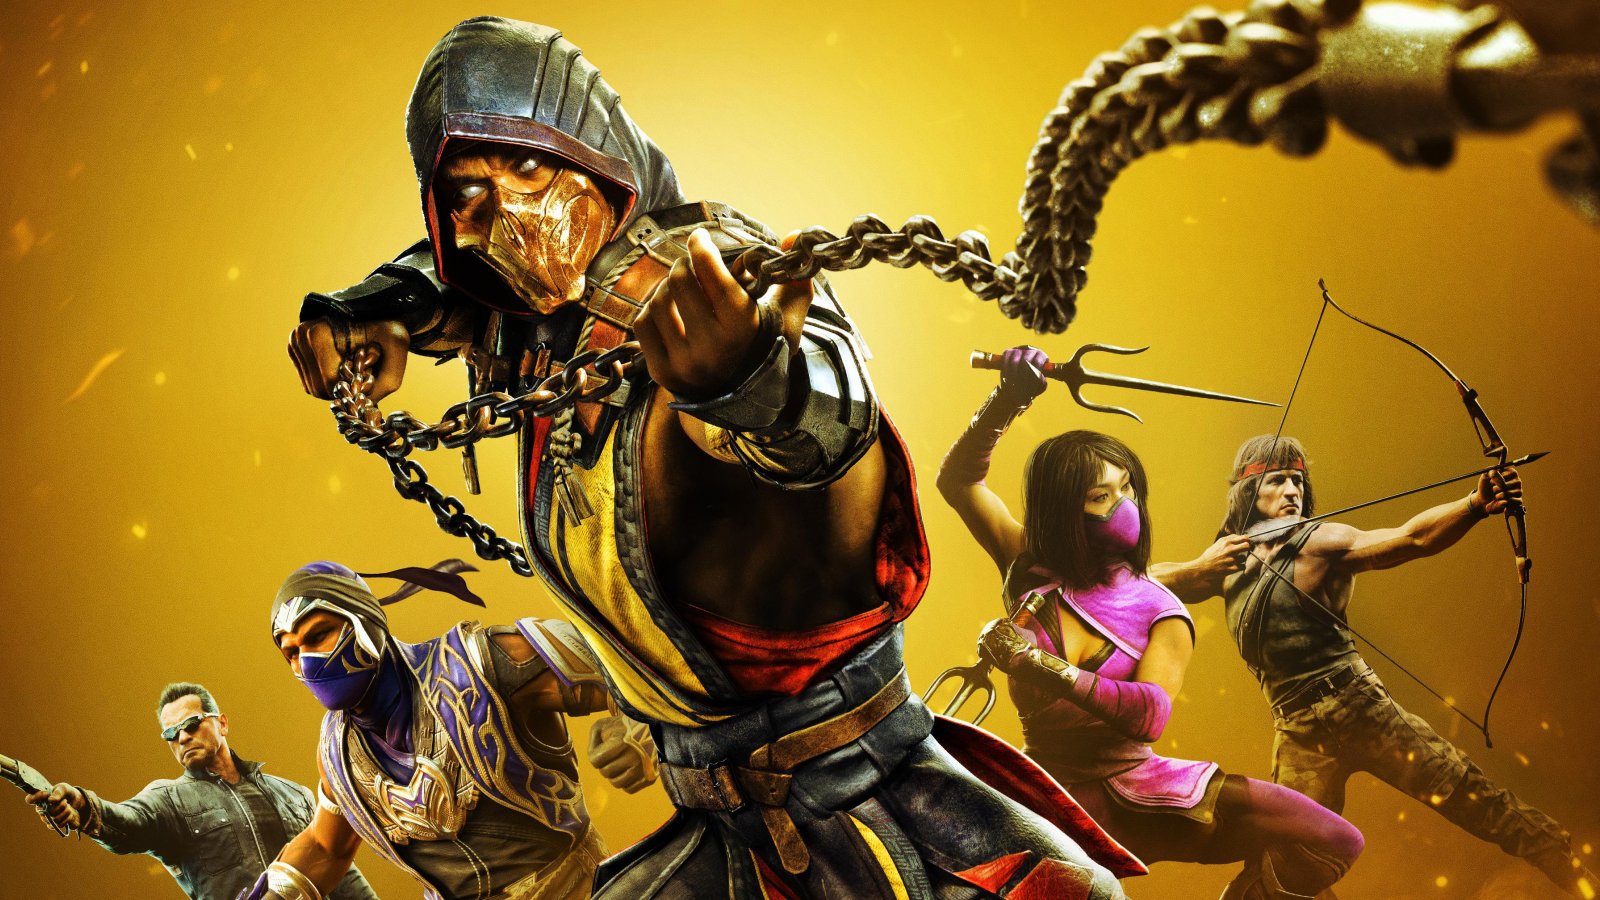 Mortal Kombat 1 verrà presentato domani con un trailer, secondo un noto leaker [aggiornata]